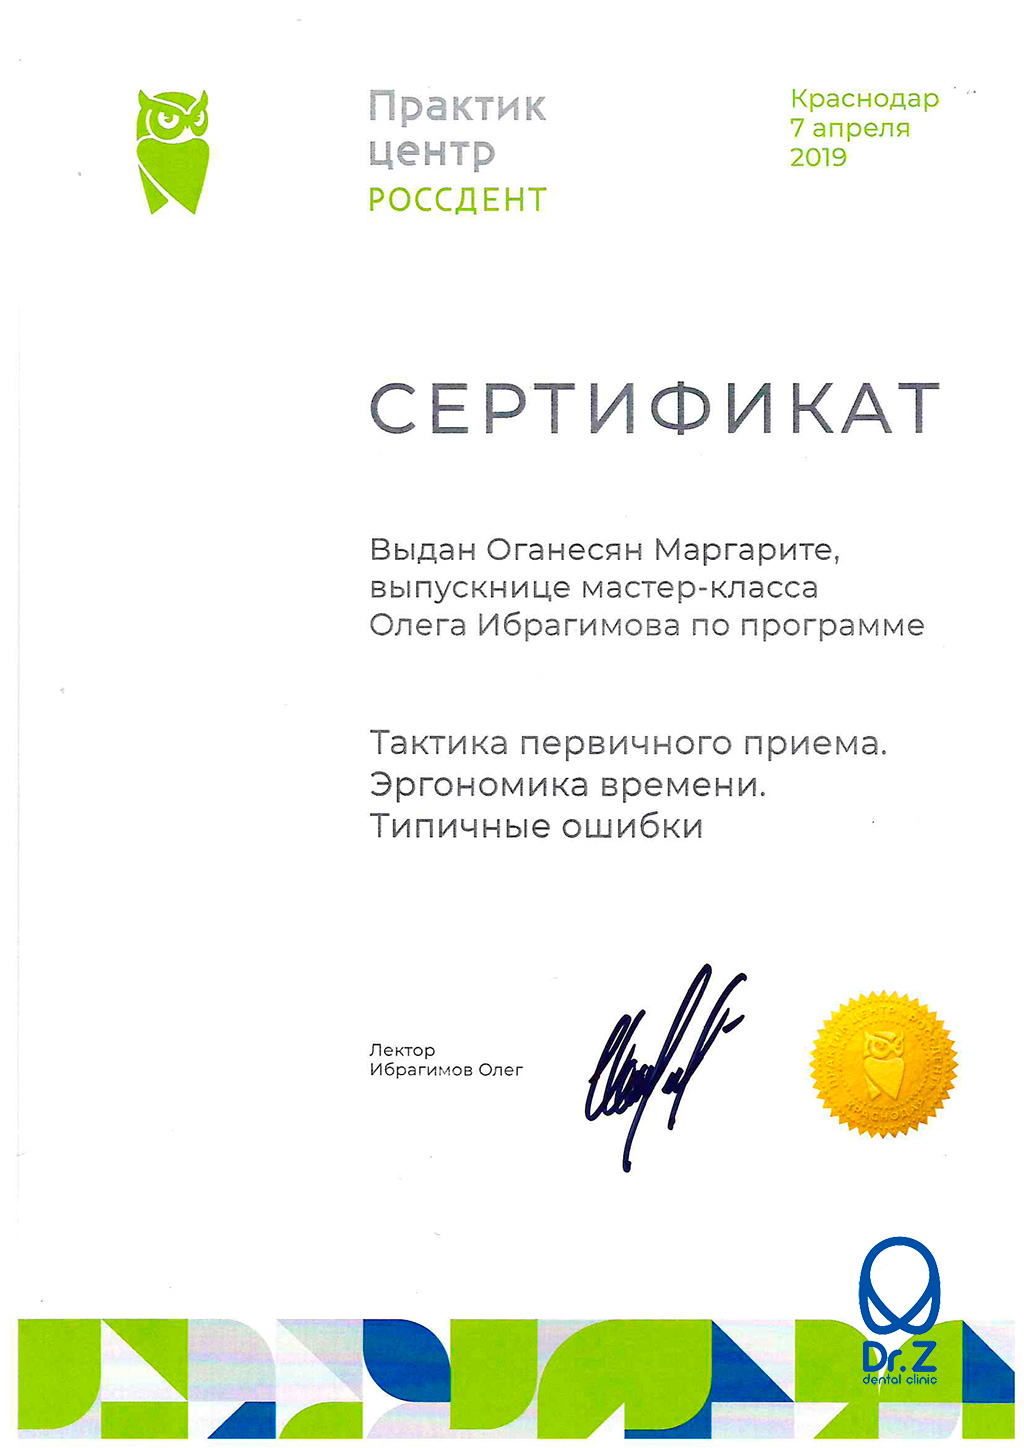 Сертификат выдан Оганесян Маргарите Гагиковне о том, что она прошла мастер-класс Олега Ибрагимова по программе 